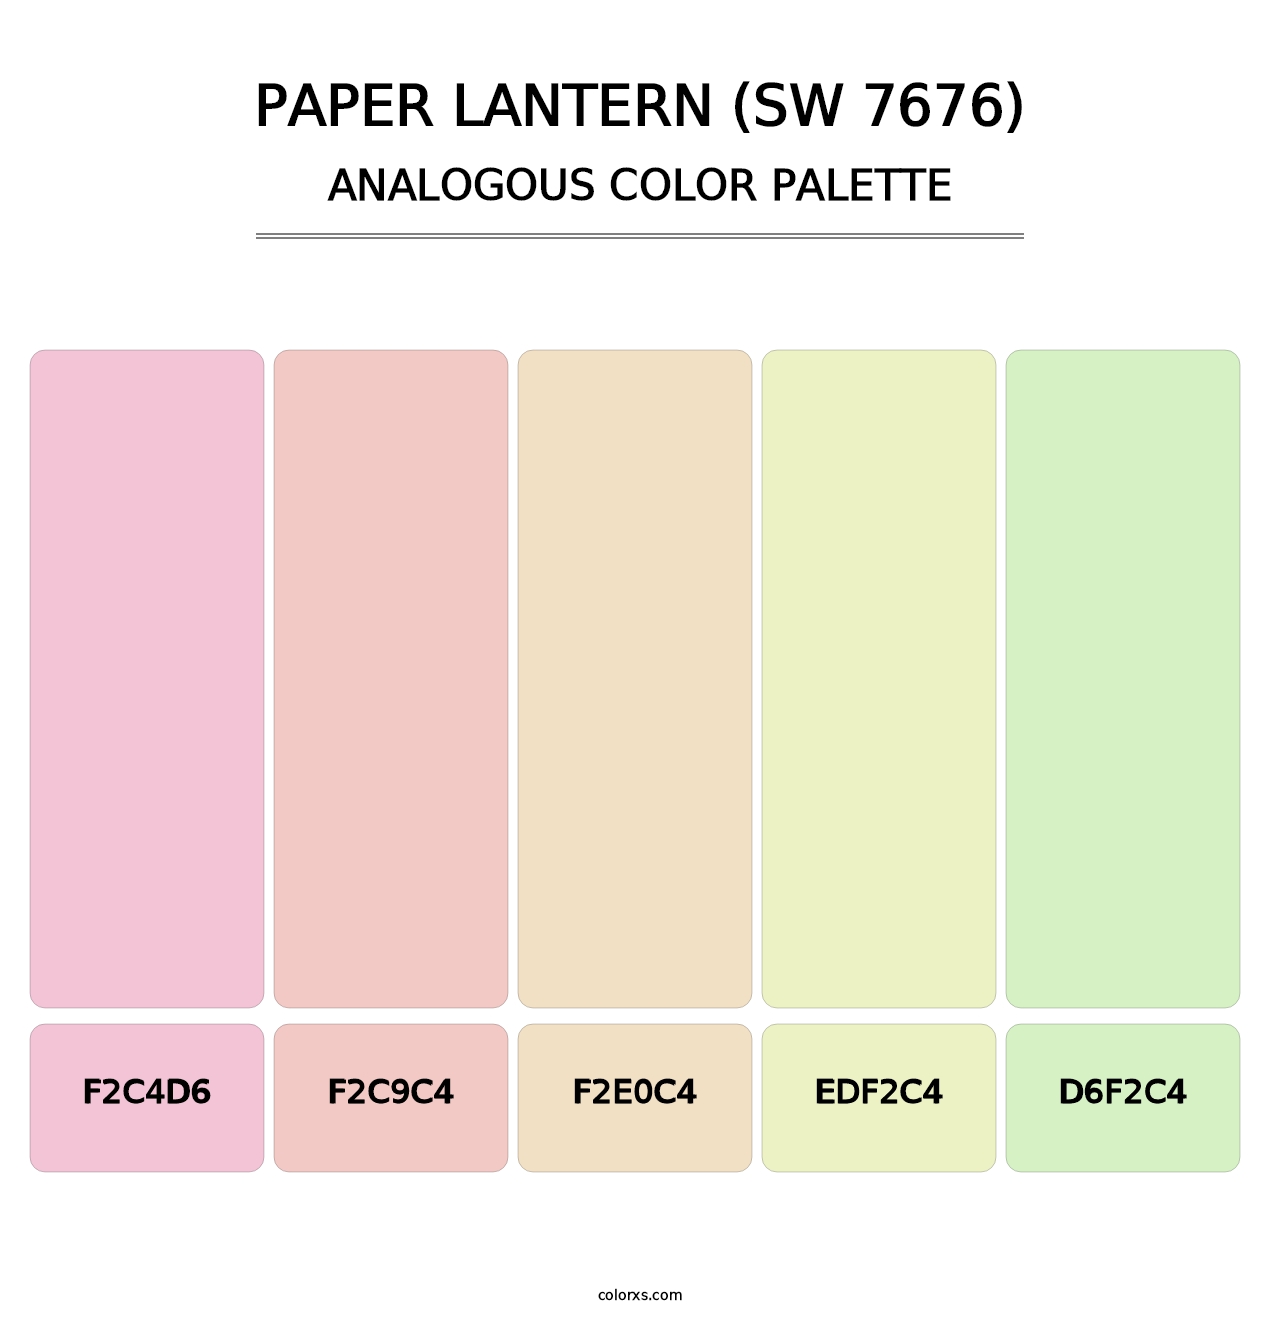 Paper Lantern (SW 7676) - Analogous Color Palette